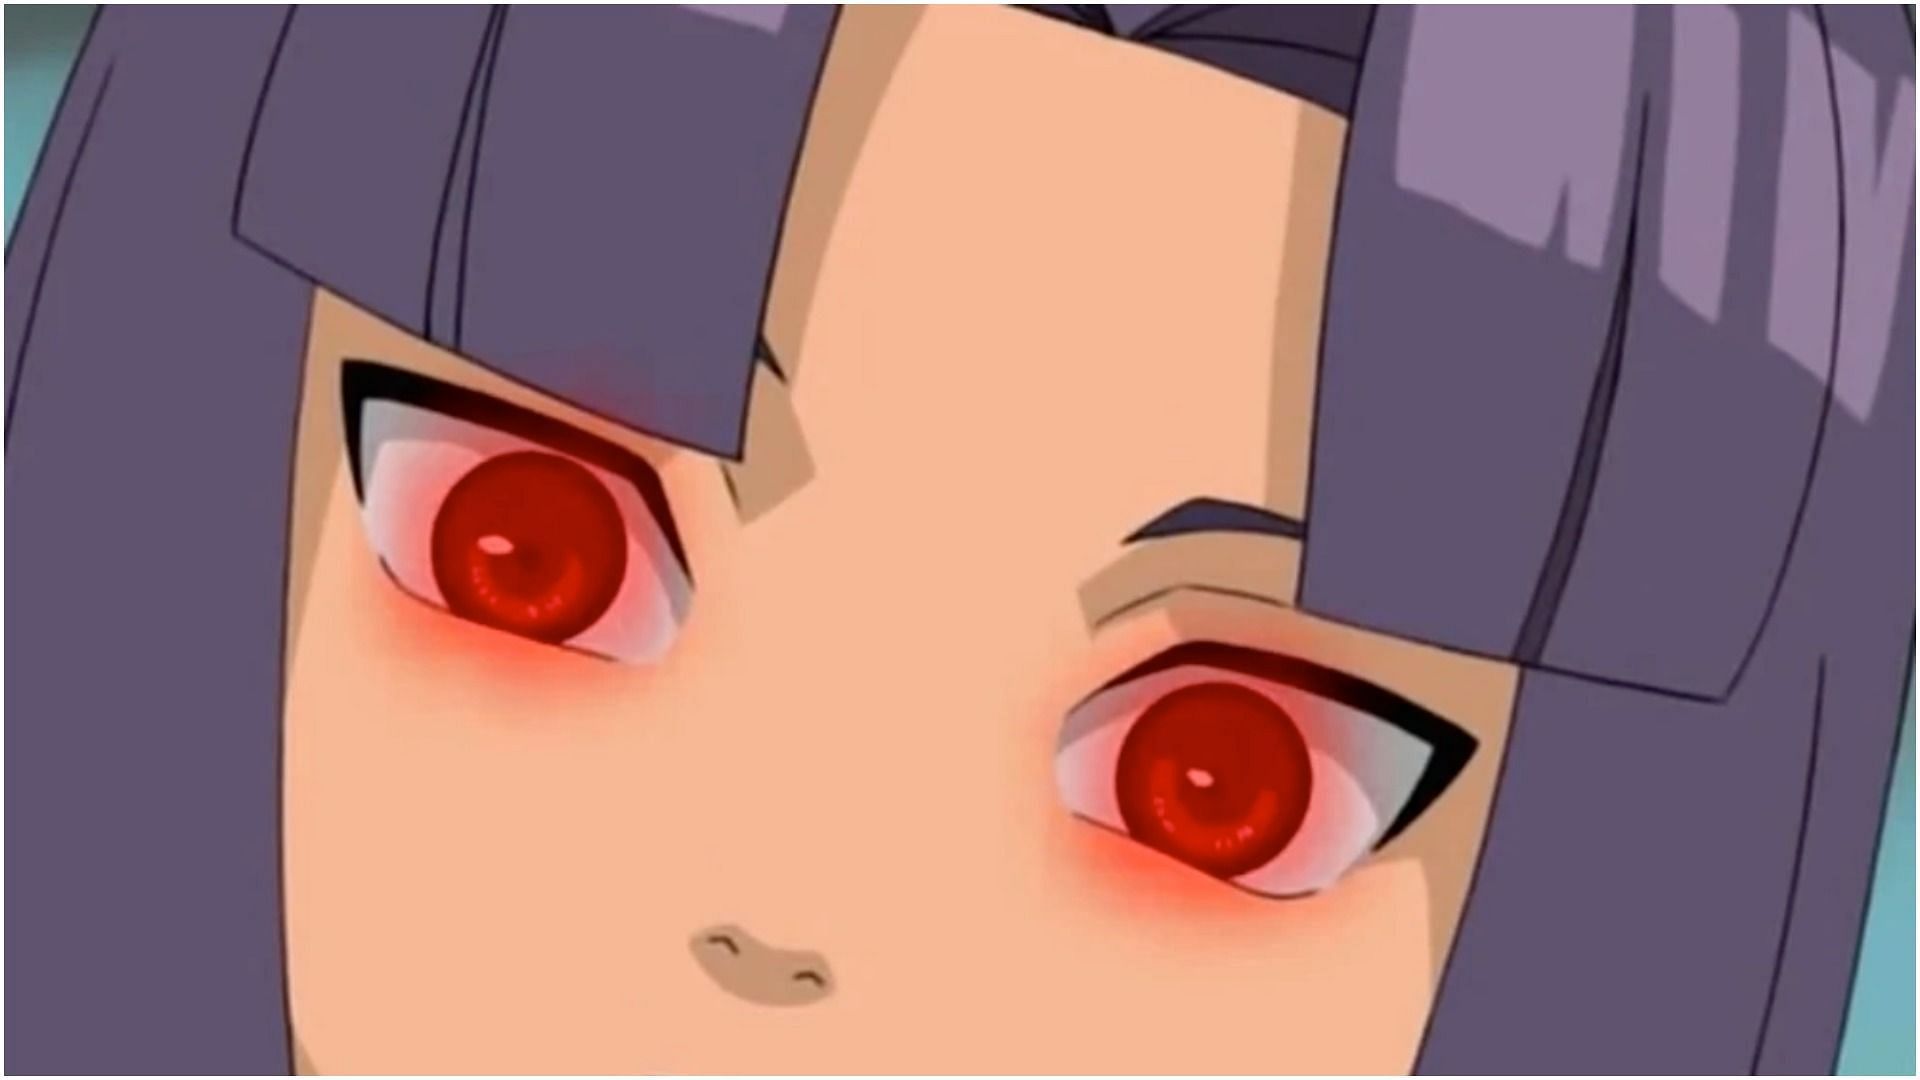 Ranmaru's Kekkei Genkai Dojutsu as seen in the anime Naruto (Image via Studio Pierrot)